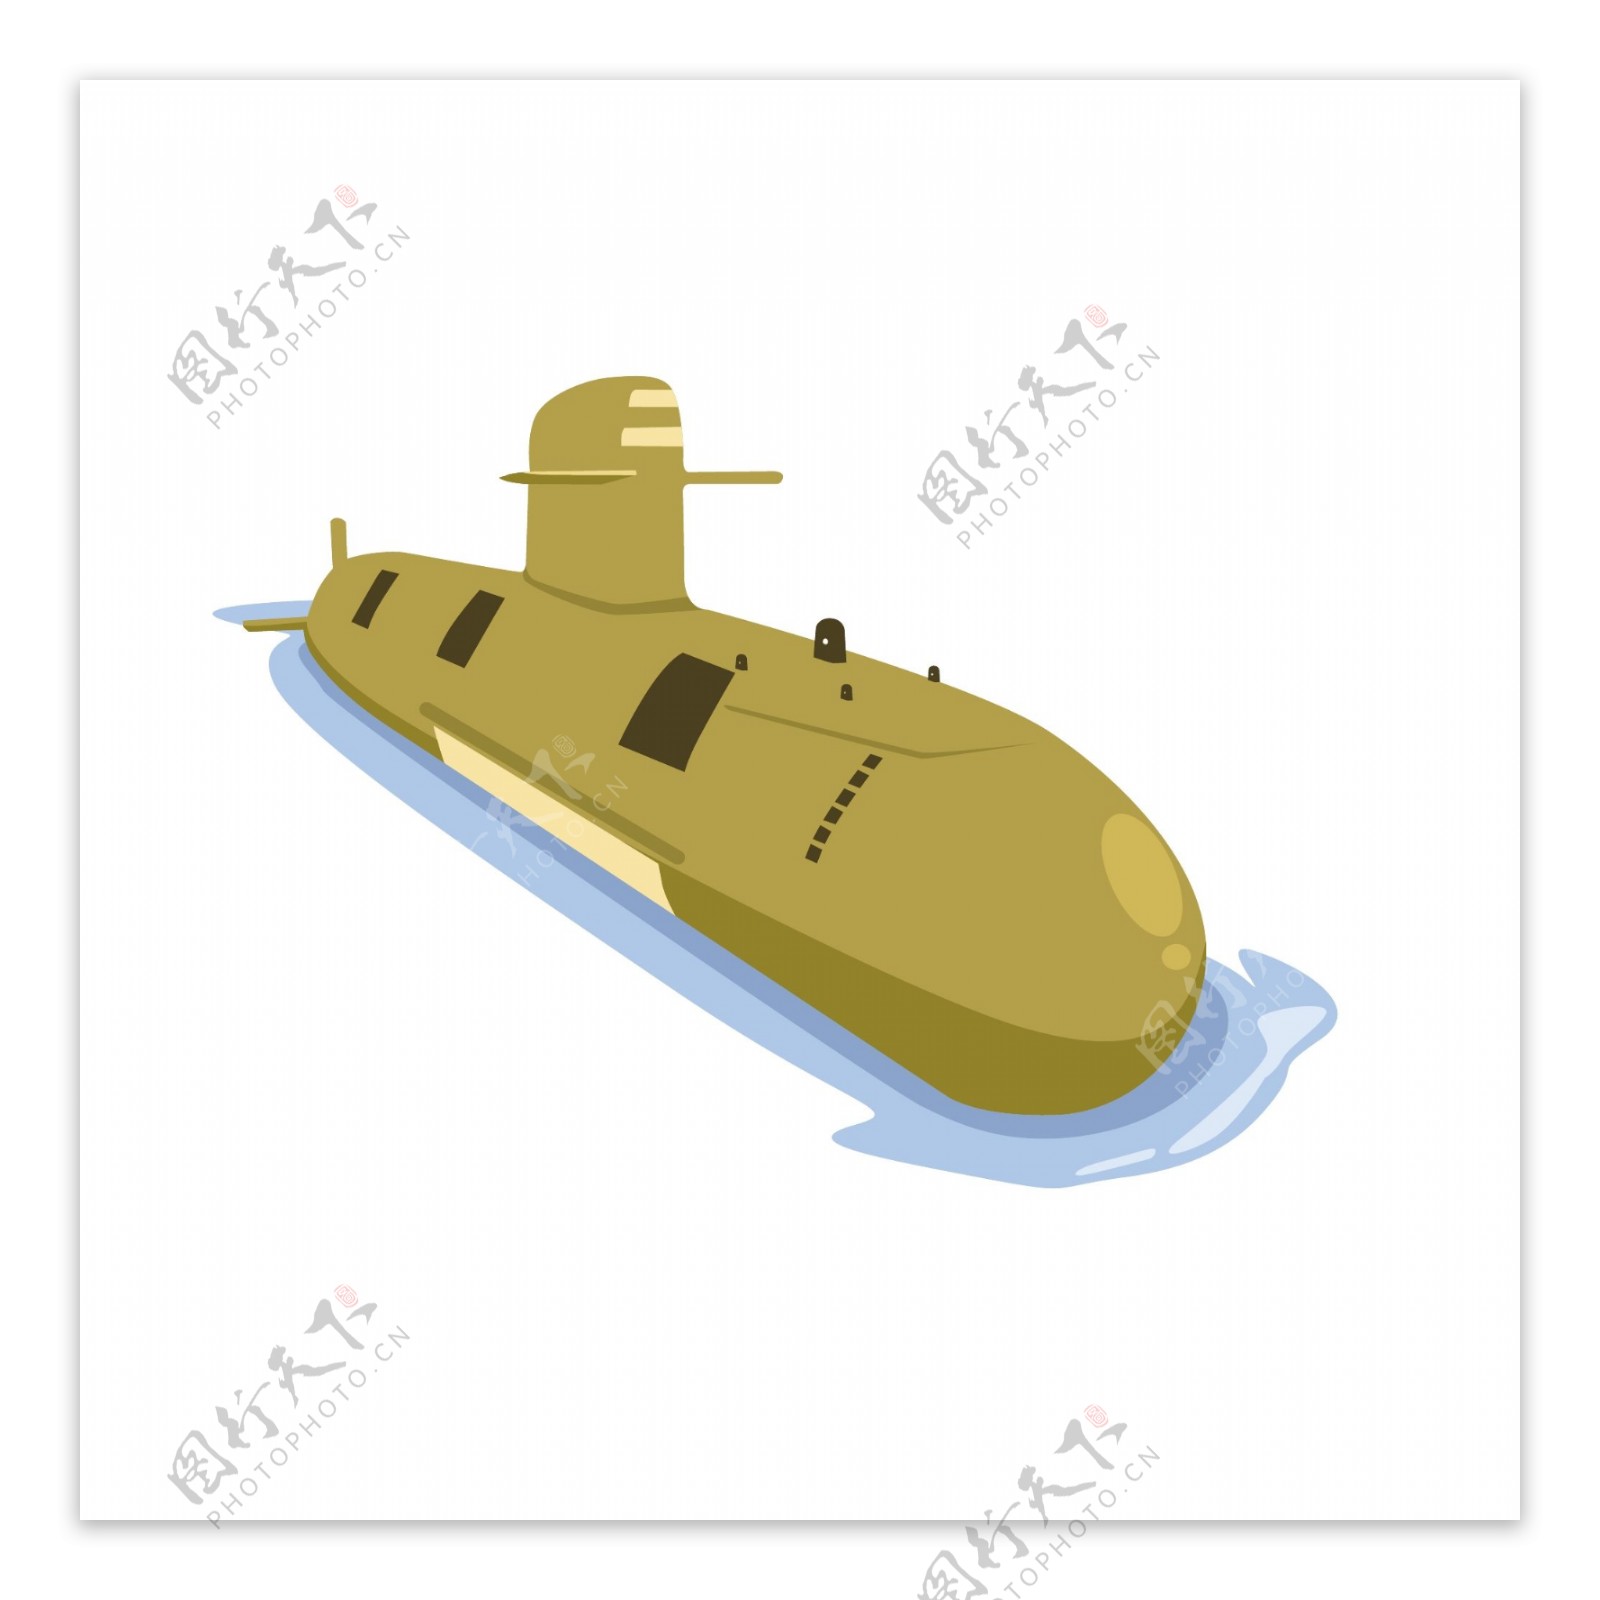 卡通潜水艇矢量素材